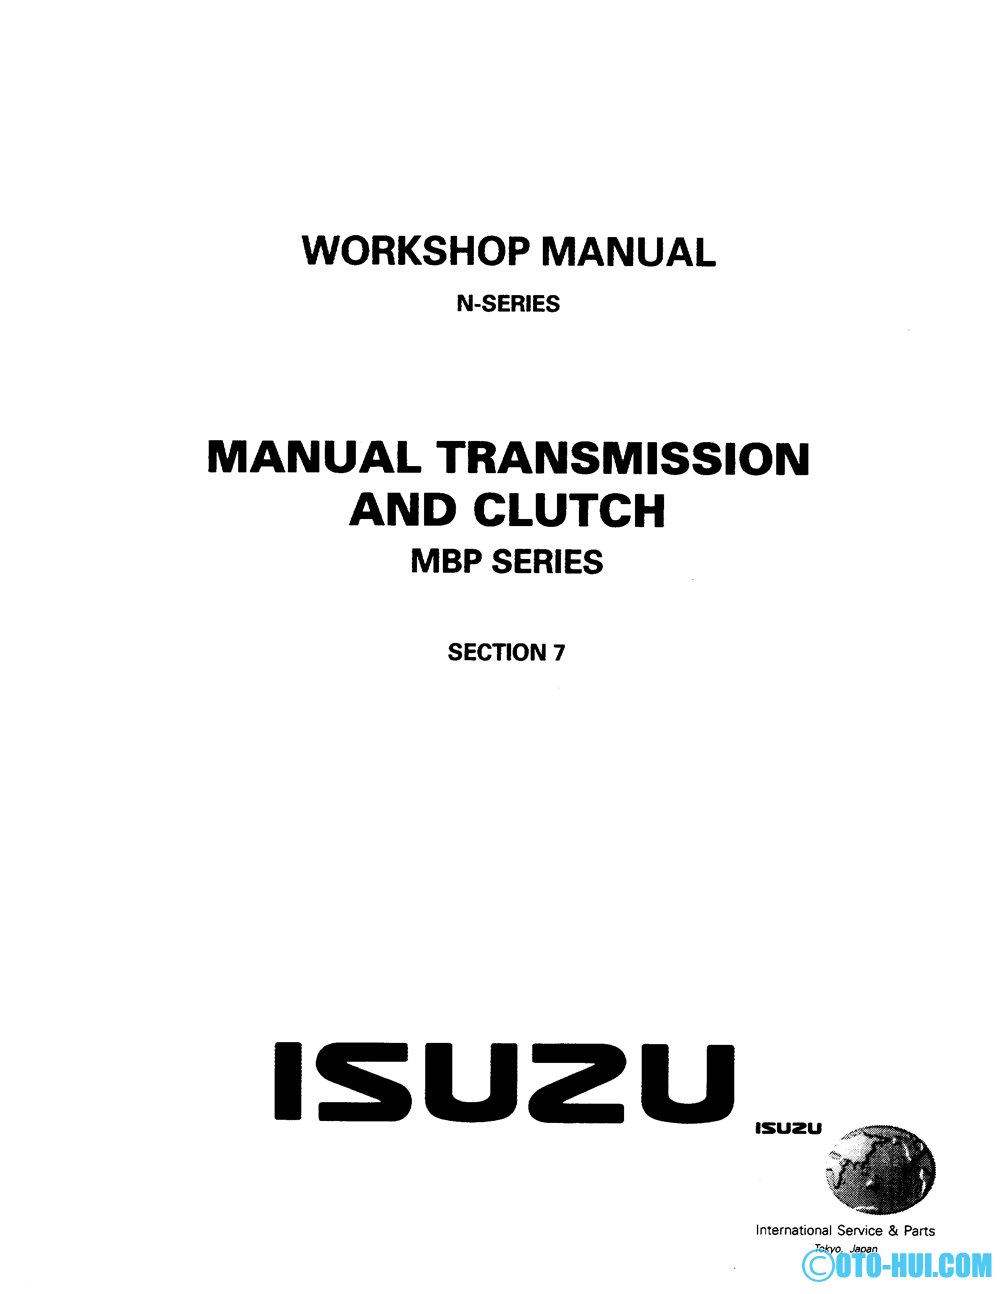 Hệ thống truyền lực xe isuzu n series (mbp series)